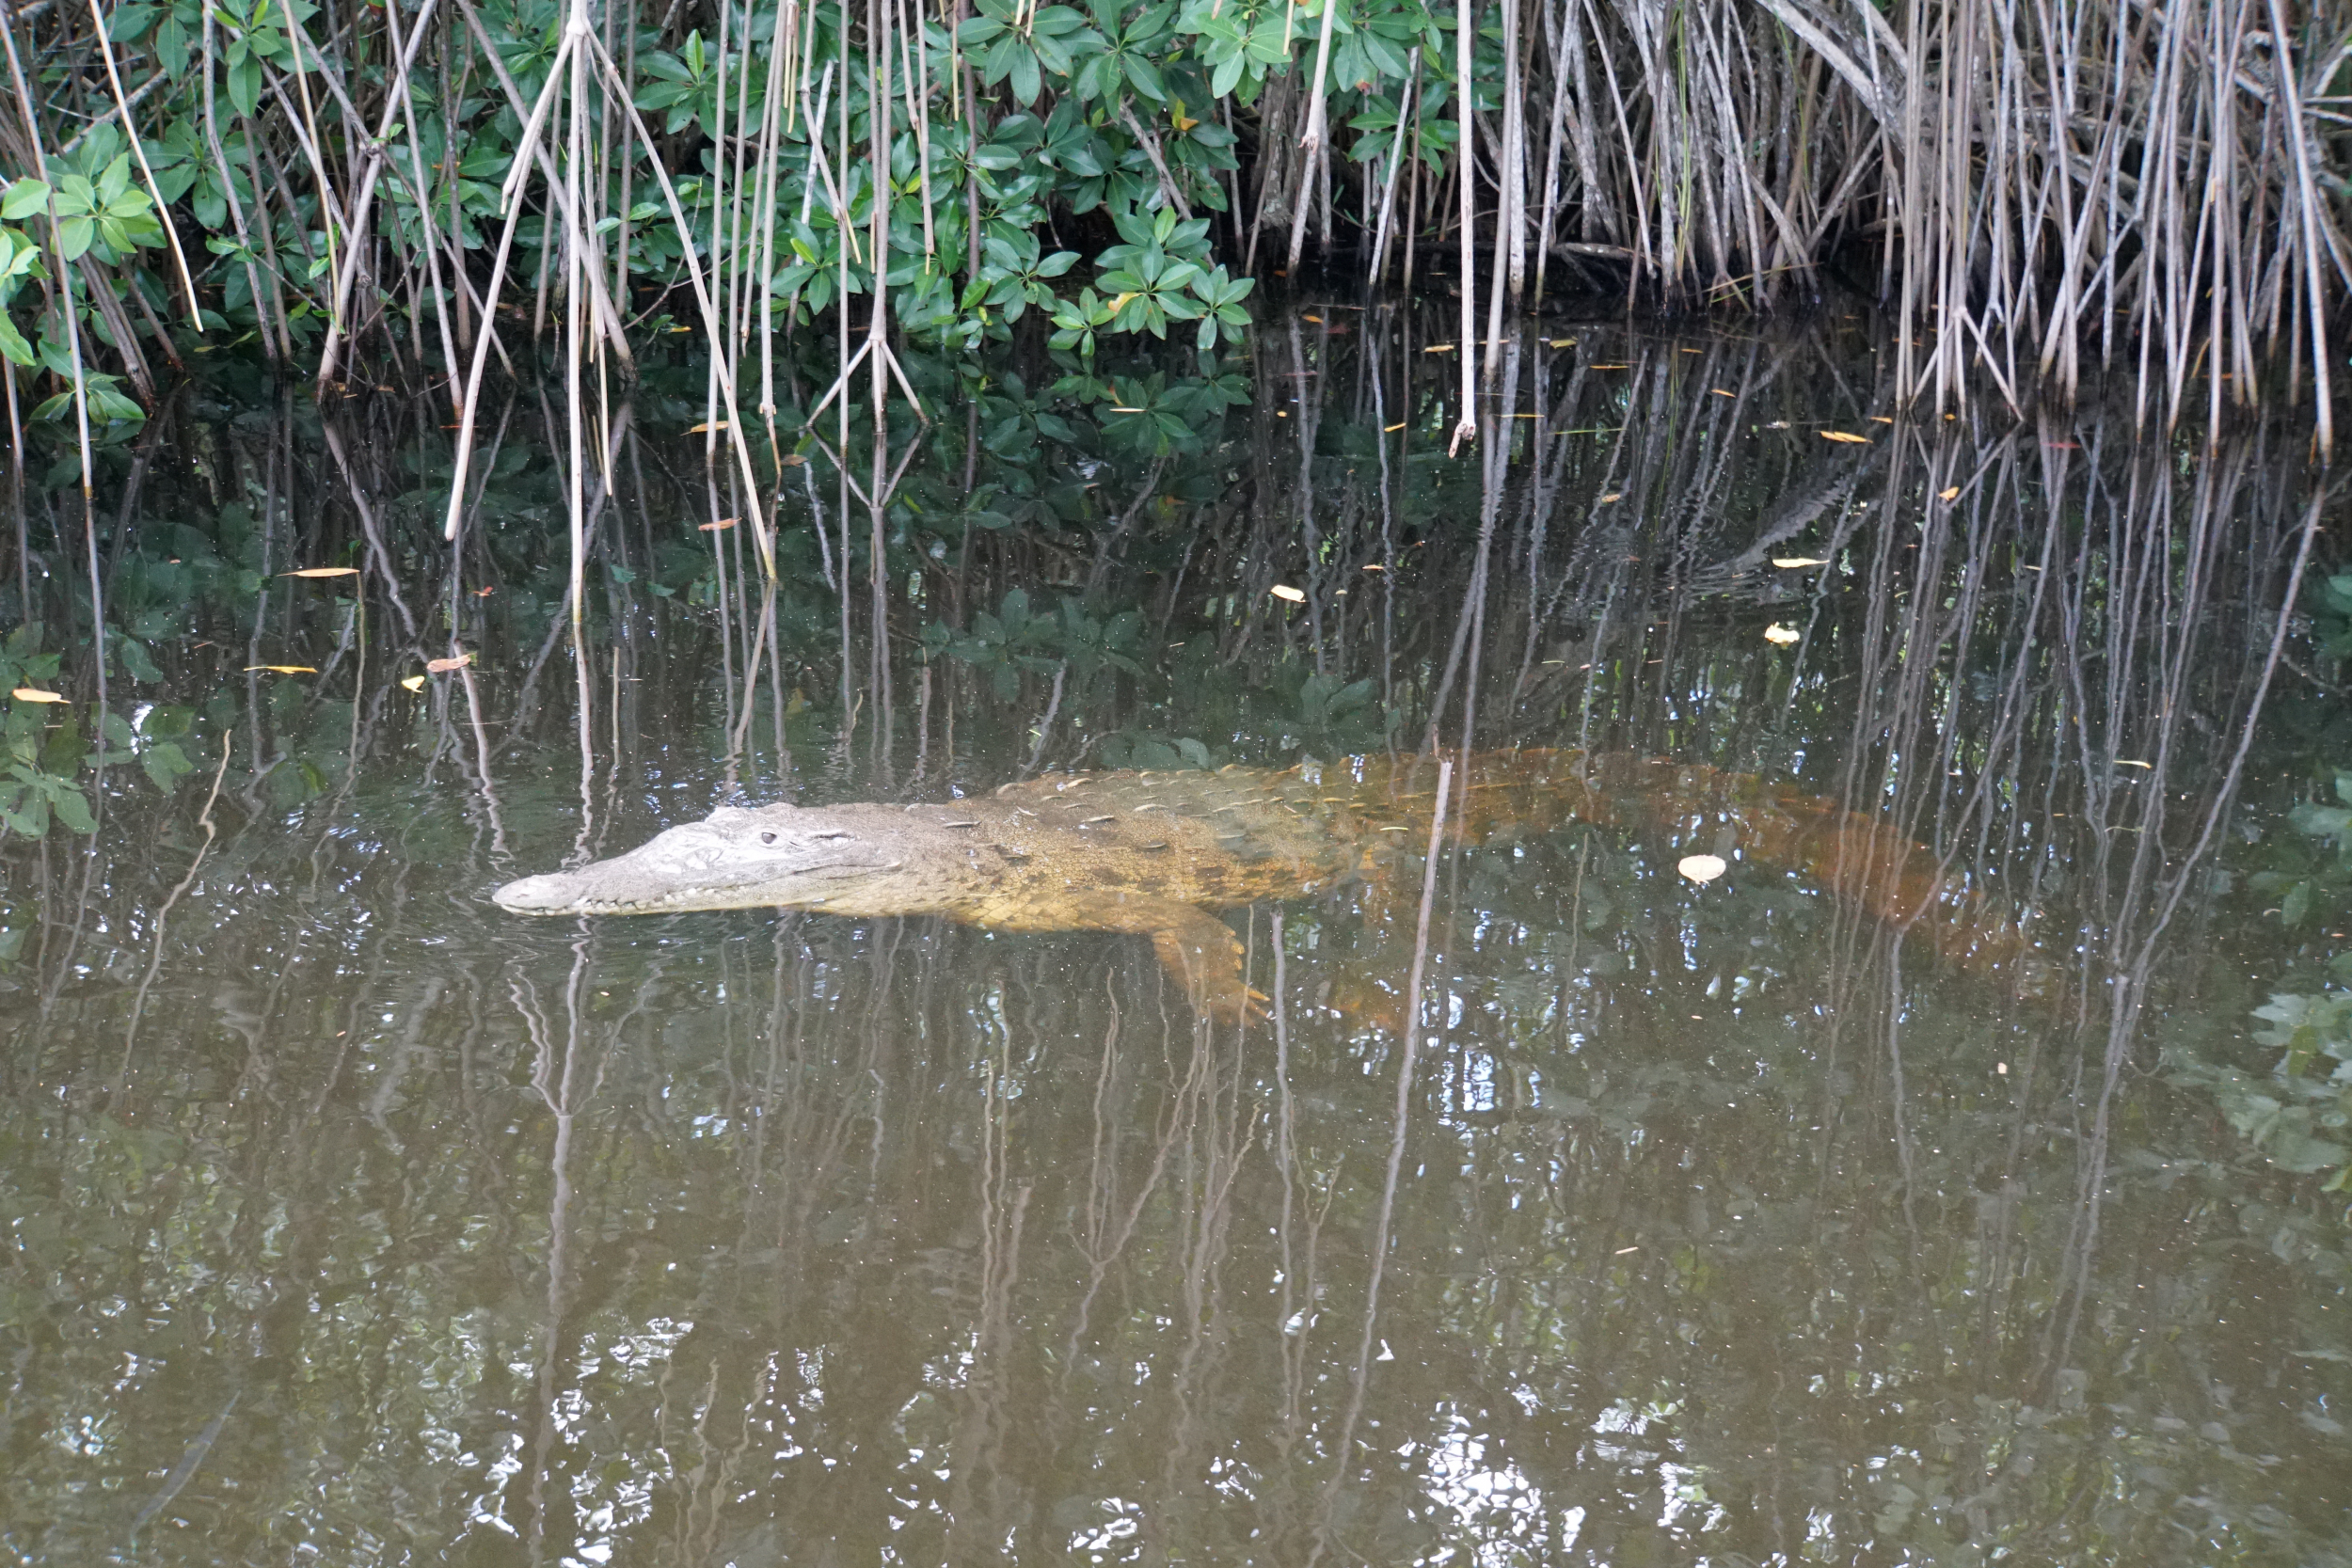 50. Alligator in the mangroves